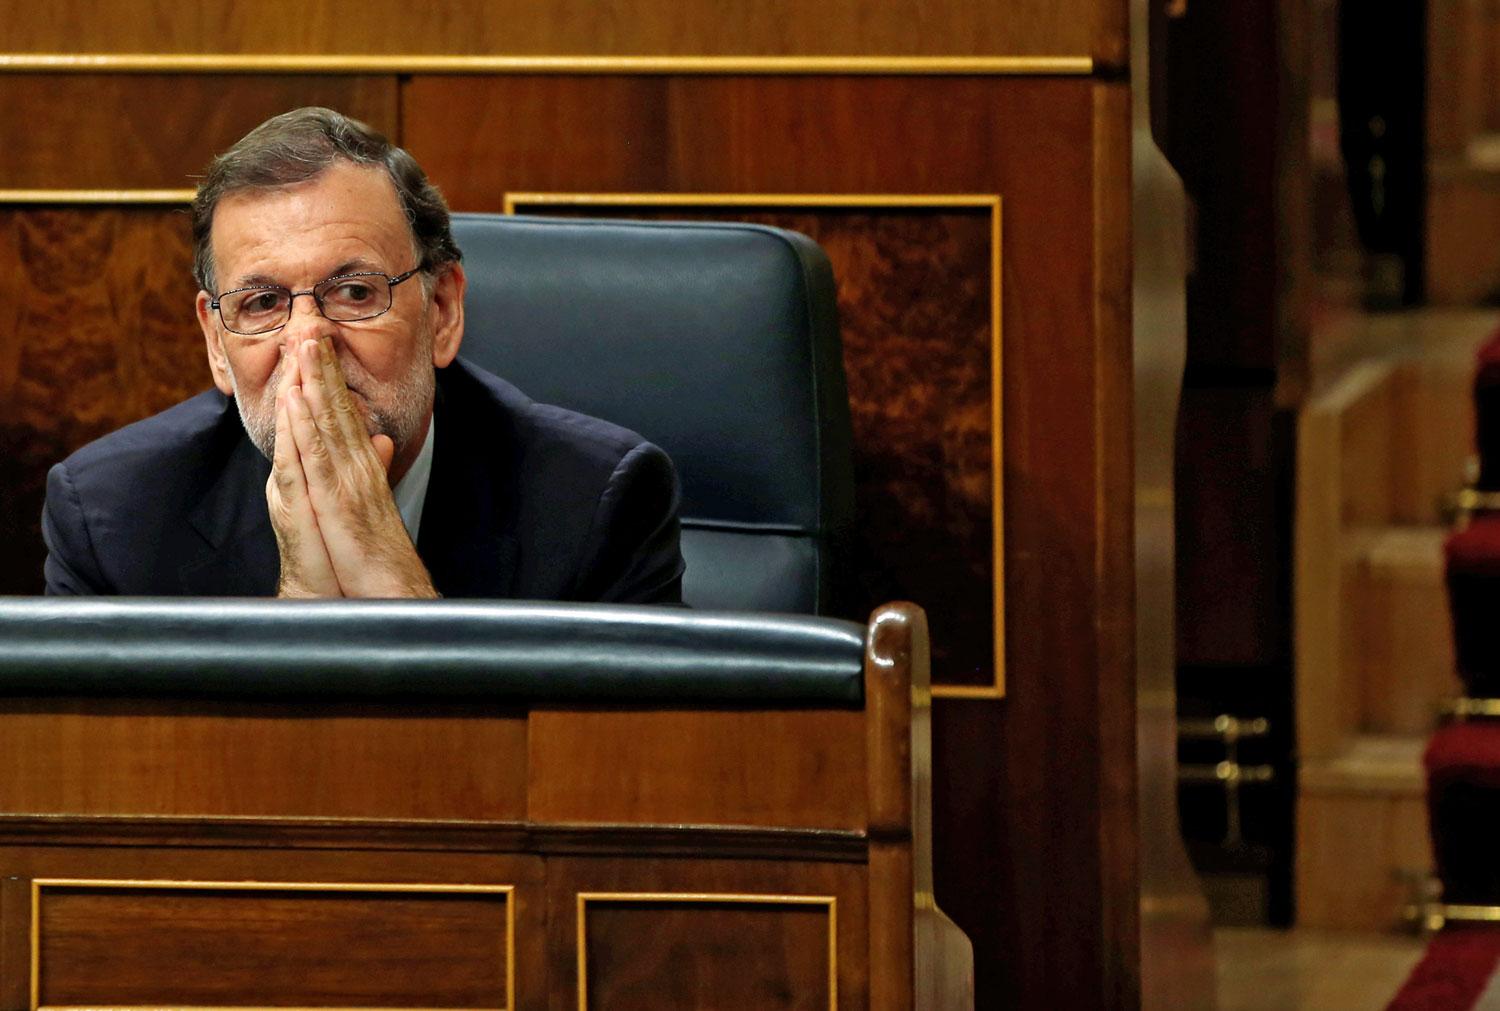 Rajoy a második bizalmi szavazáson. Ismét veszített